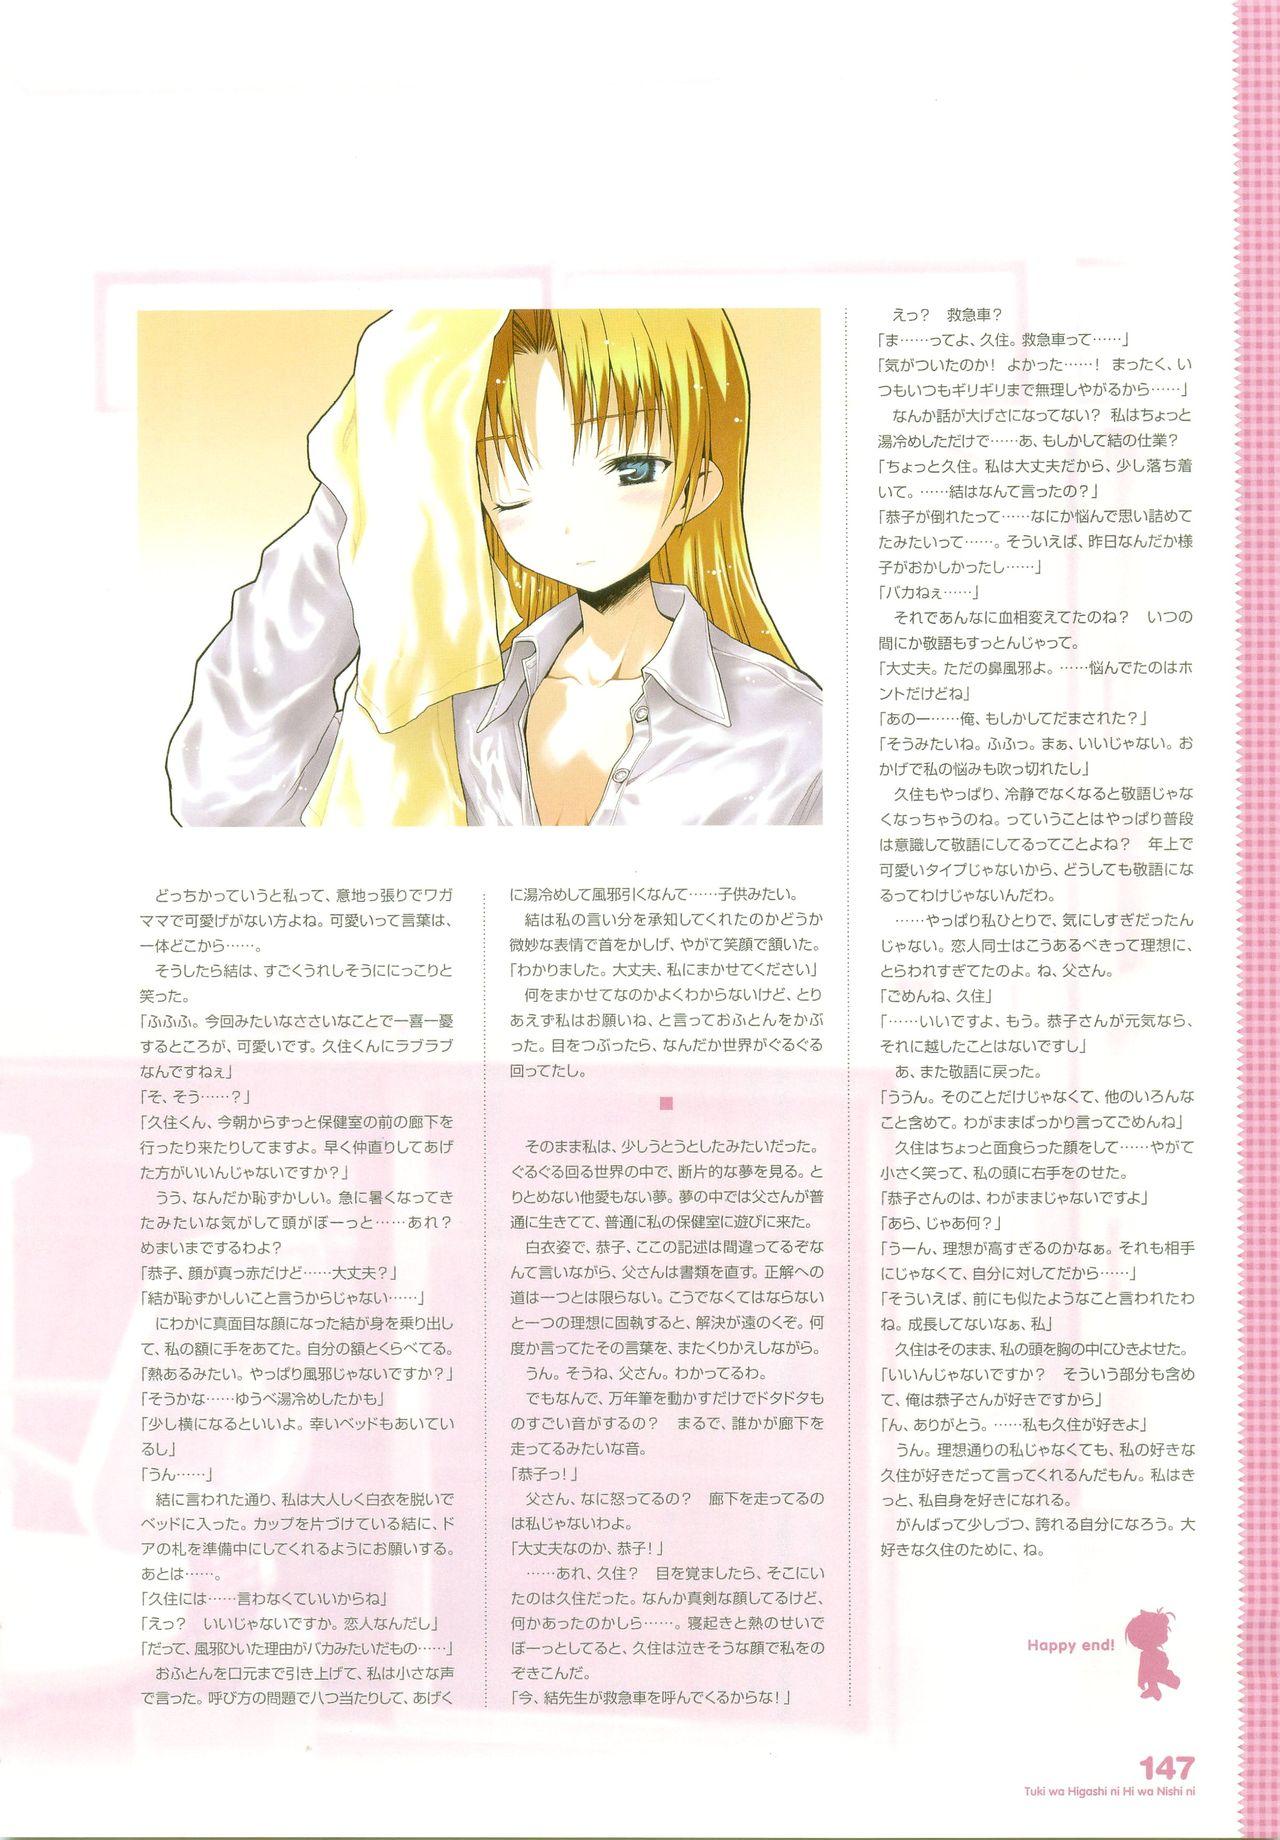 Tsuki wa Higashi ni Hi wa Nishi ni - Operation Sanctuary - Visual Fan Book Shokai Ban 181